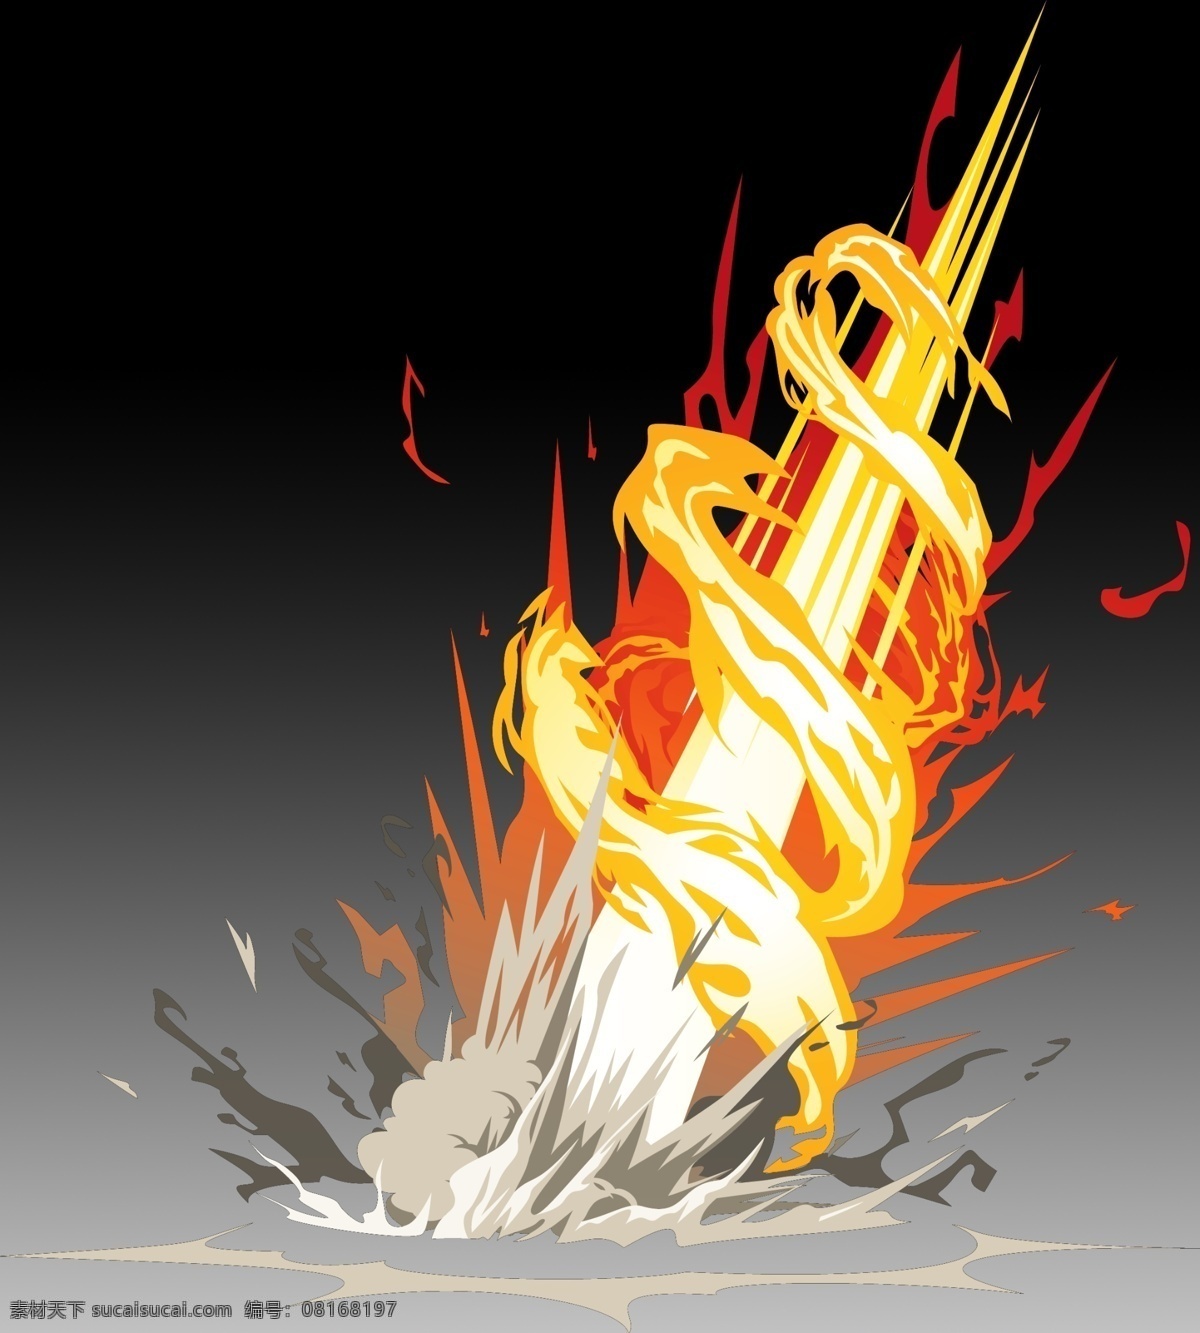 爆炸特效 爆炸 火焰 游戏特效 爆破特效 陨落特效 爆炸火焰 游戏 动漫动画